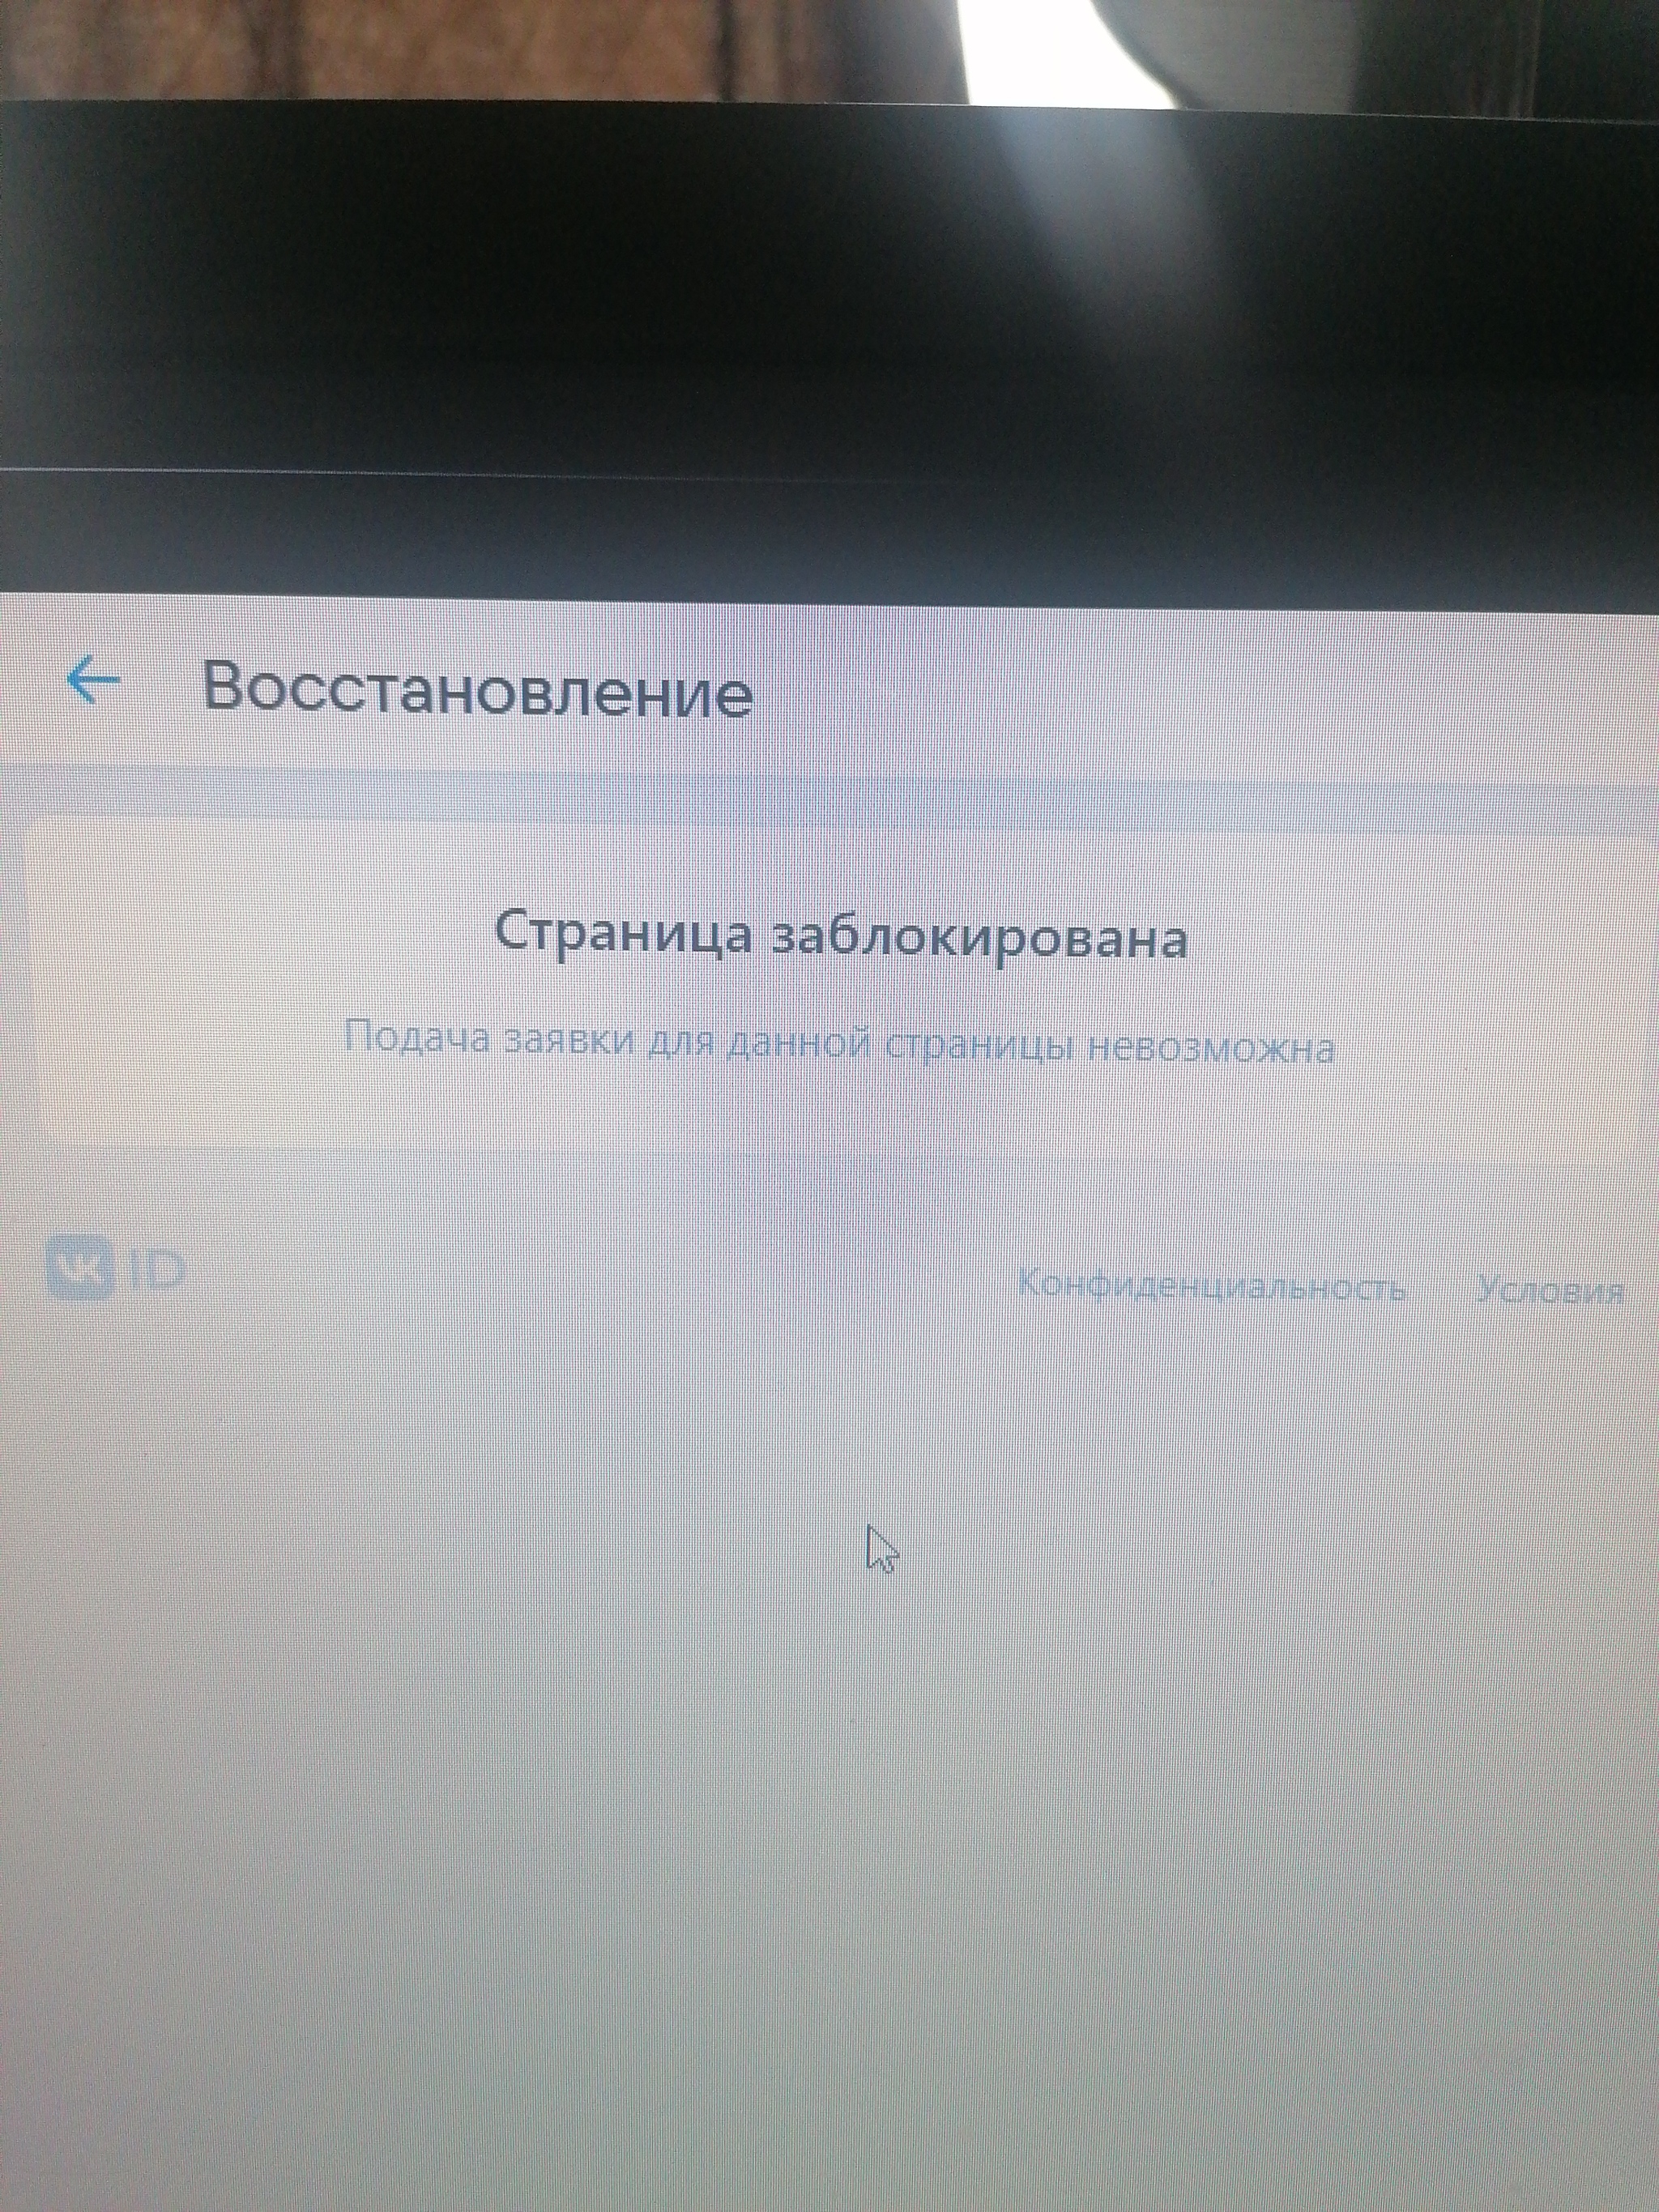 Как разблокировать аккаунт «ВКонтакте»